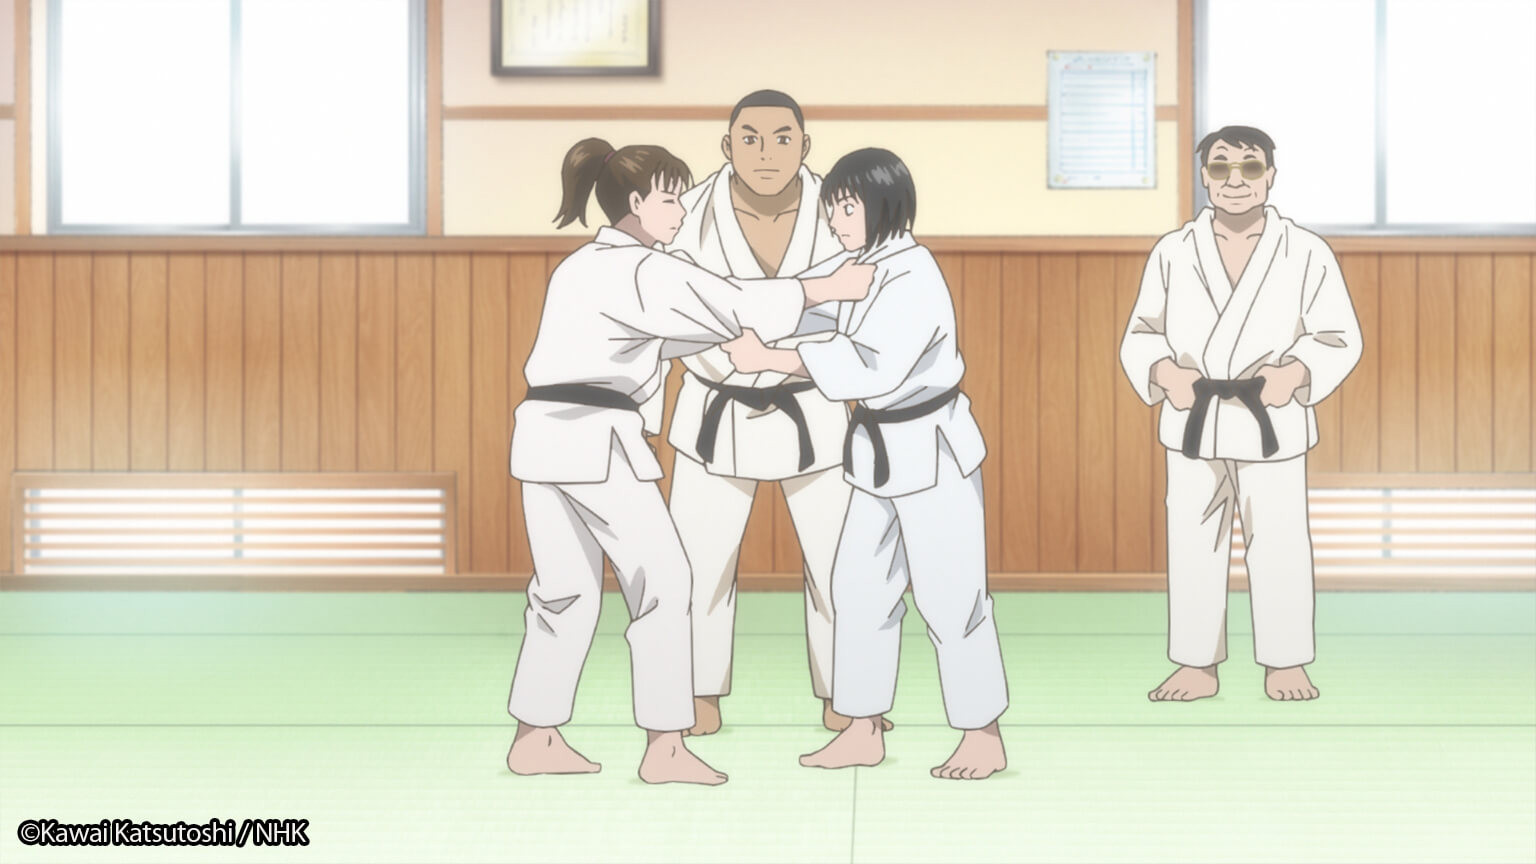 Episode 6 Vision Impaired Judo